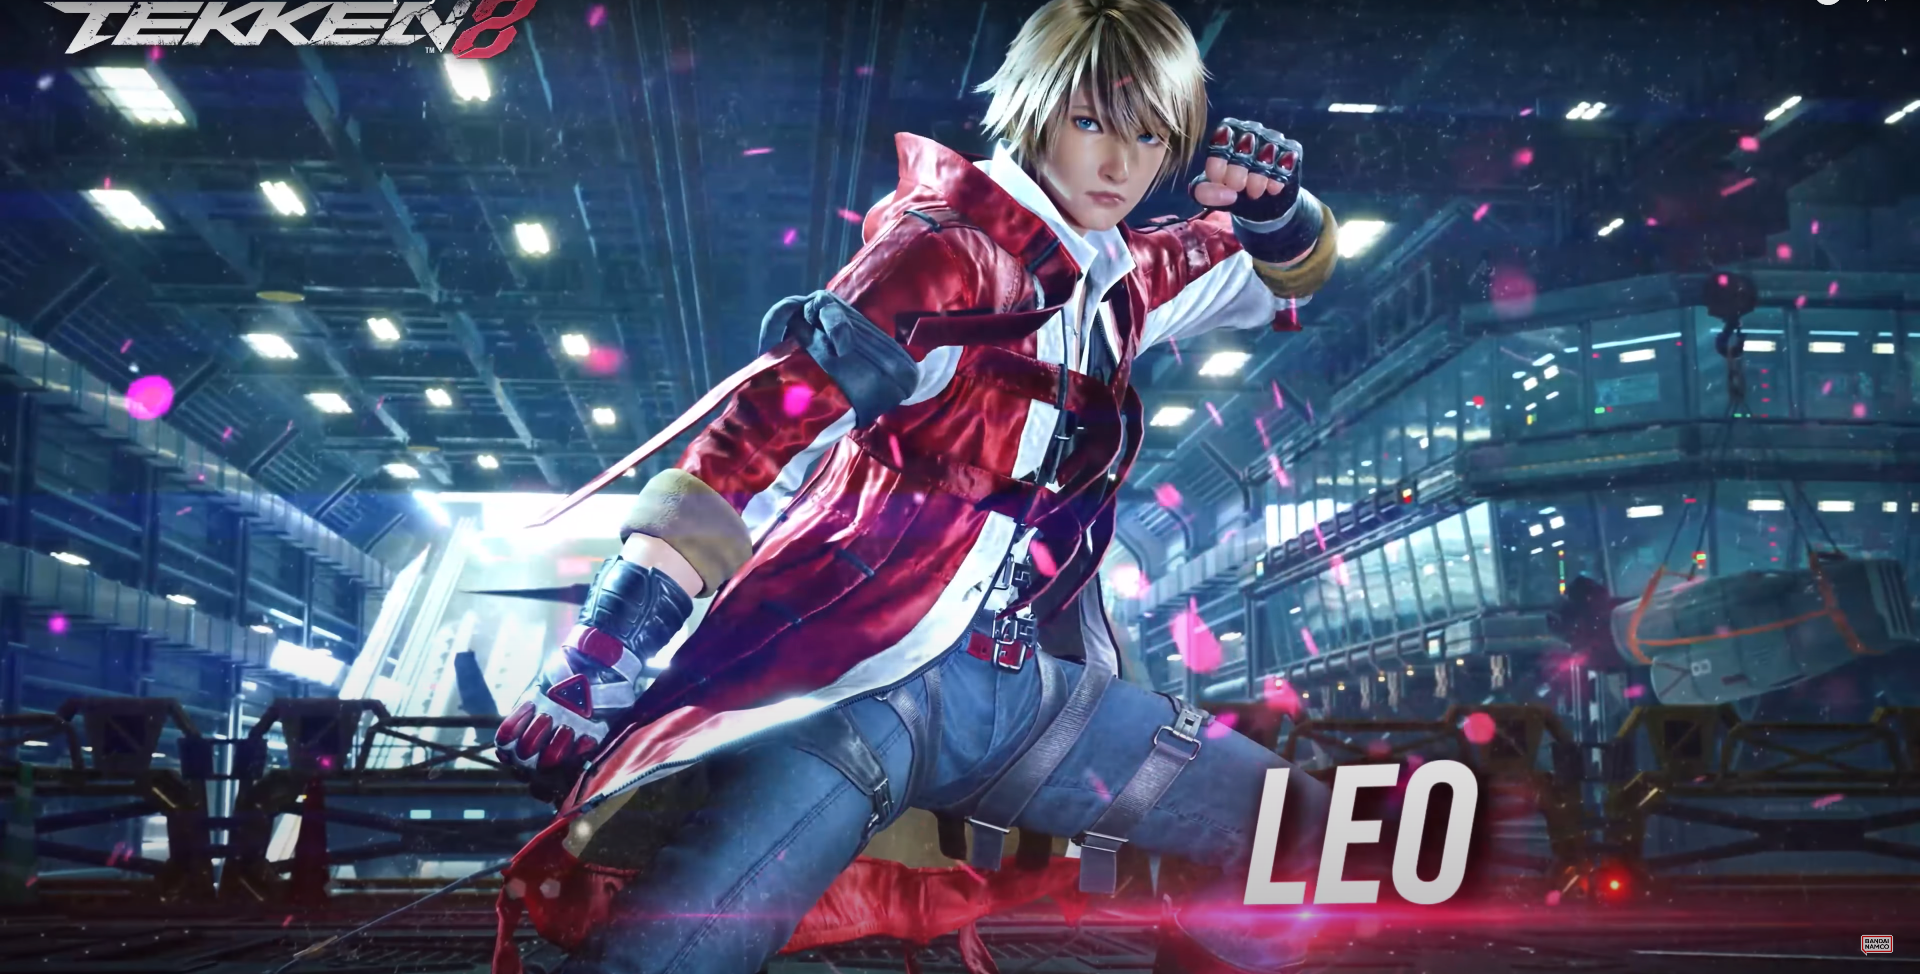 Bandai Namco har släppt en ny Tekken 8 trailer, som ger en kort titt på en annan karaktär - Leo